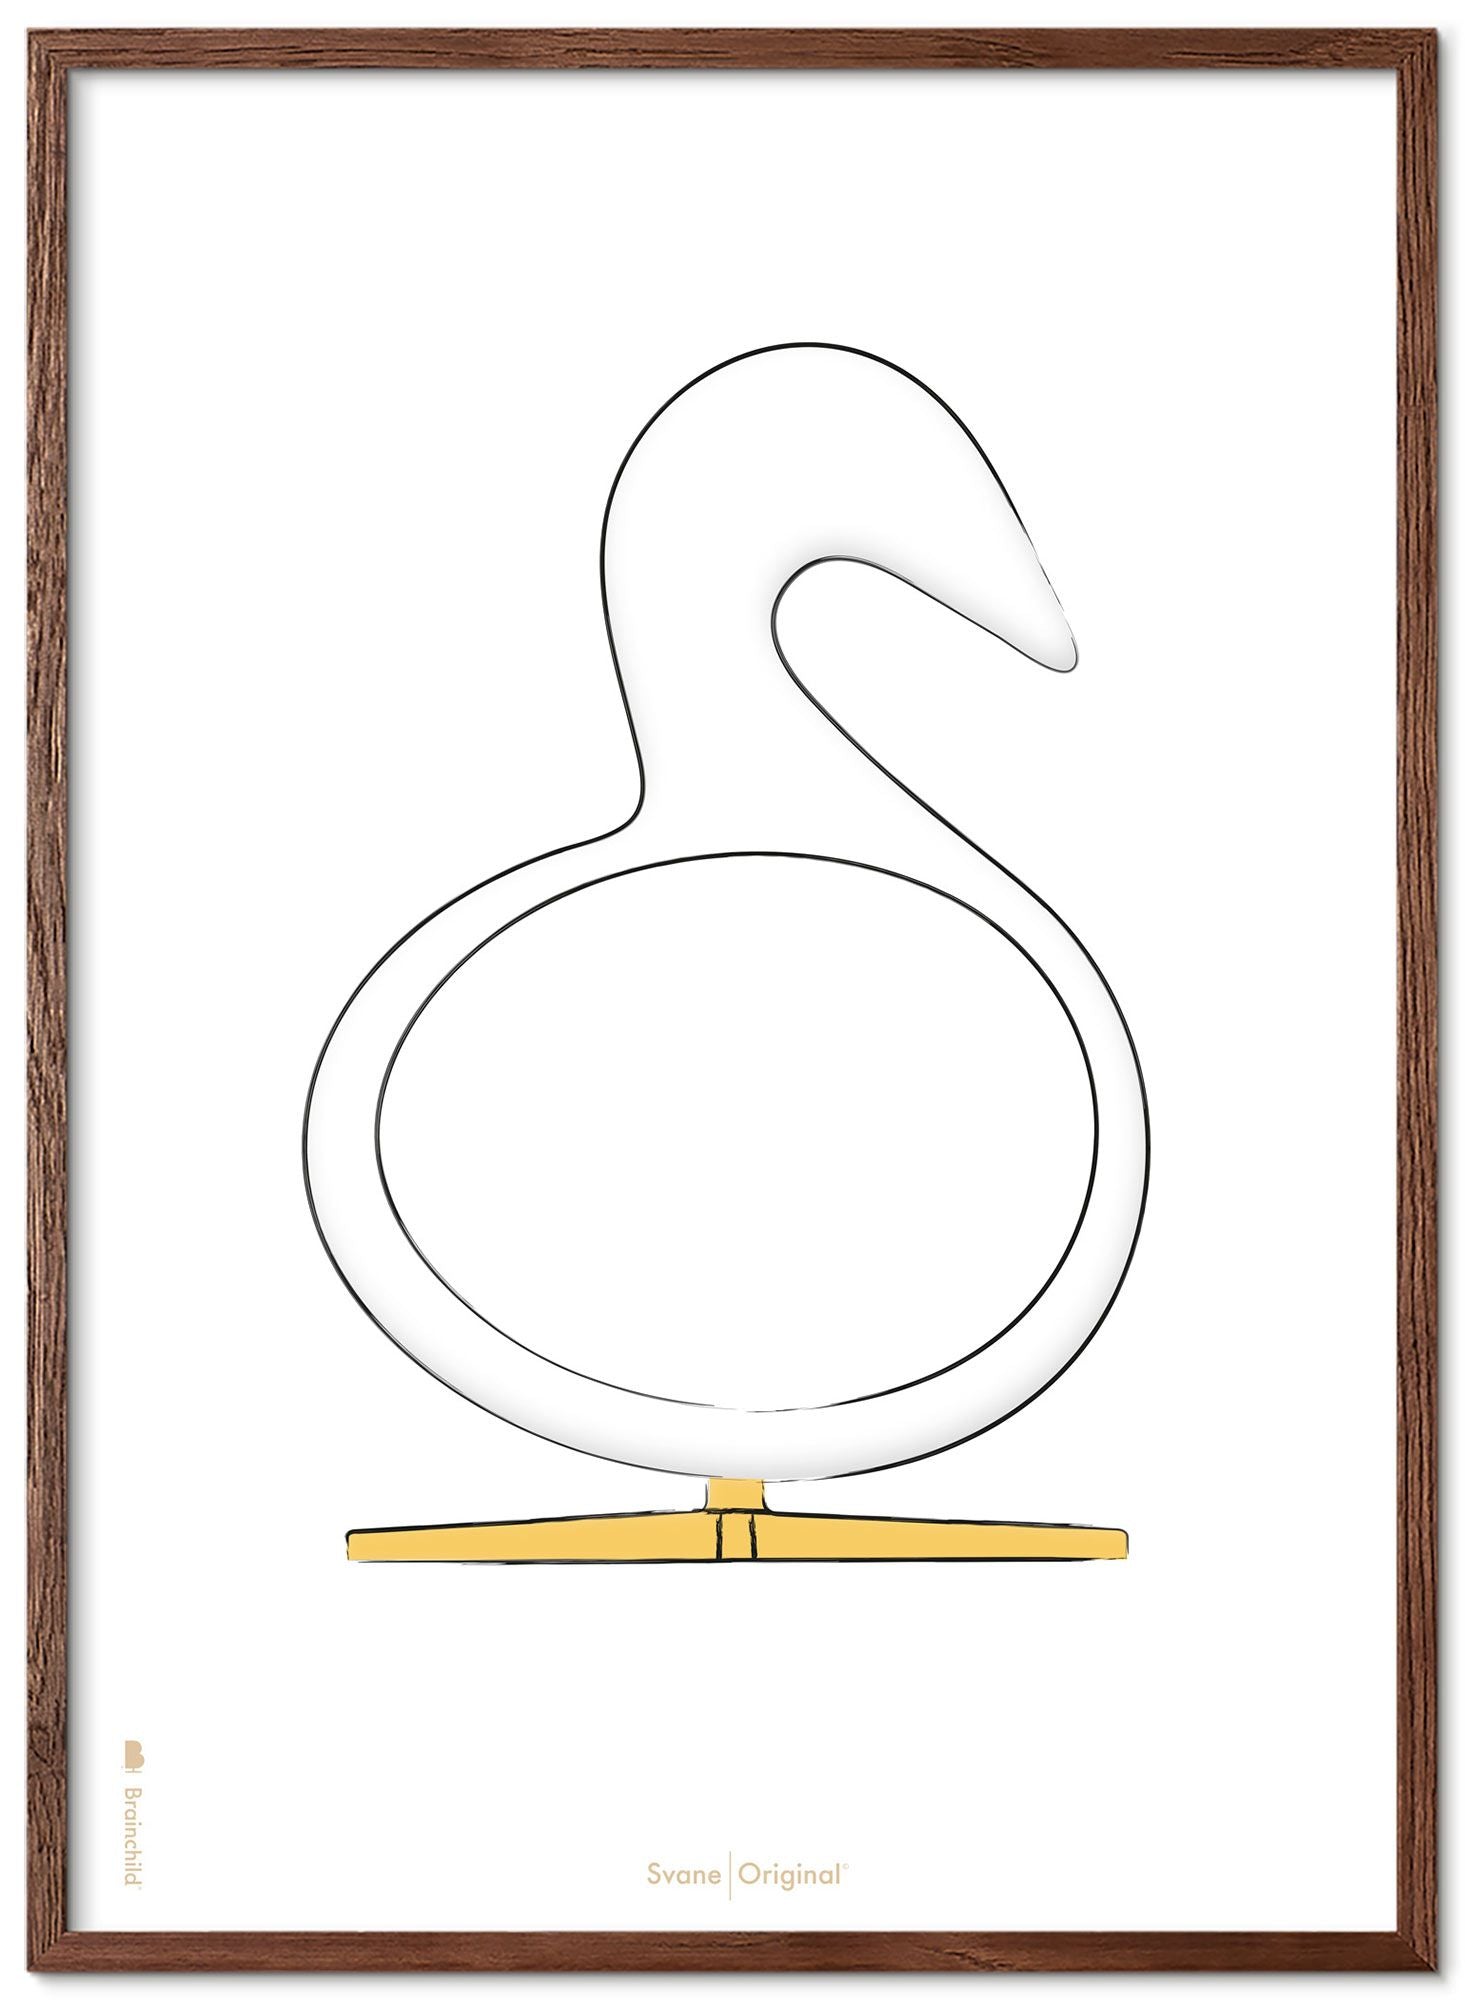 Brainchild Swan Design Sketch Poster Frame Made of Dark Wood 50x70 cm, hvit bakgrunn